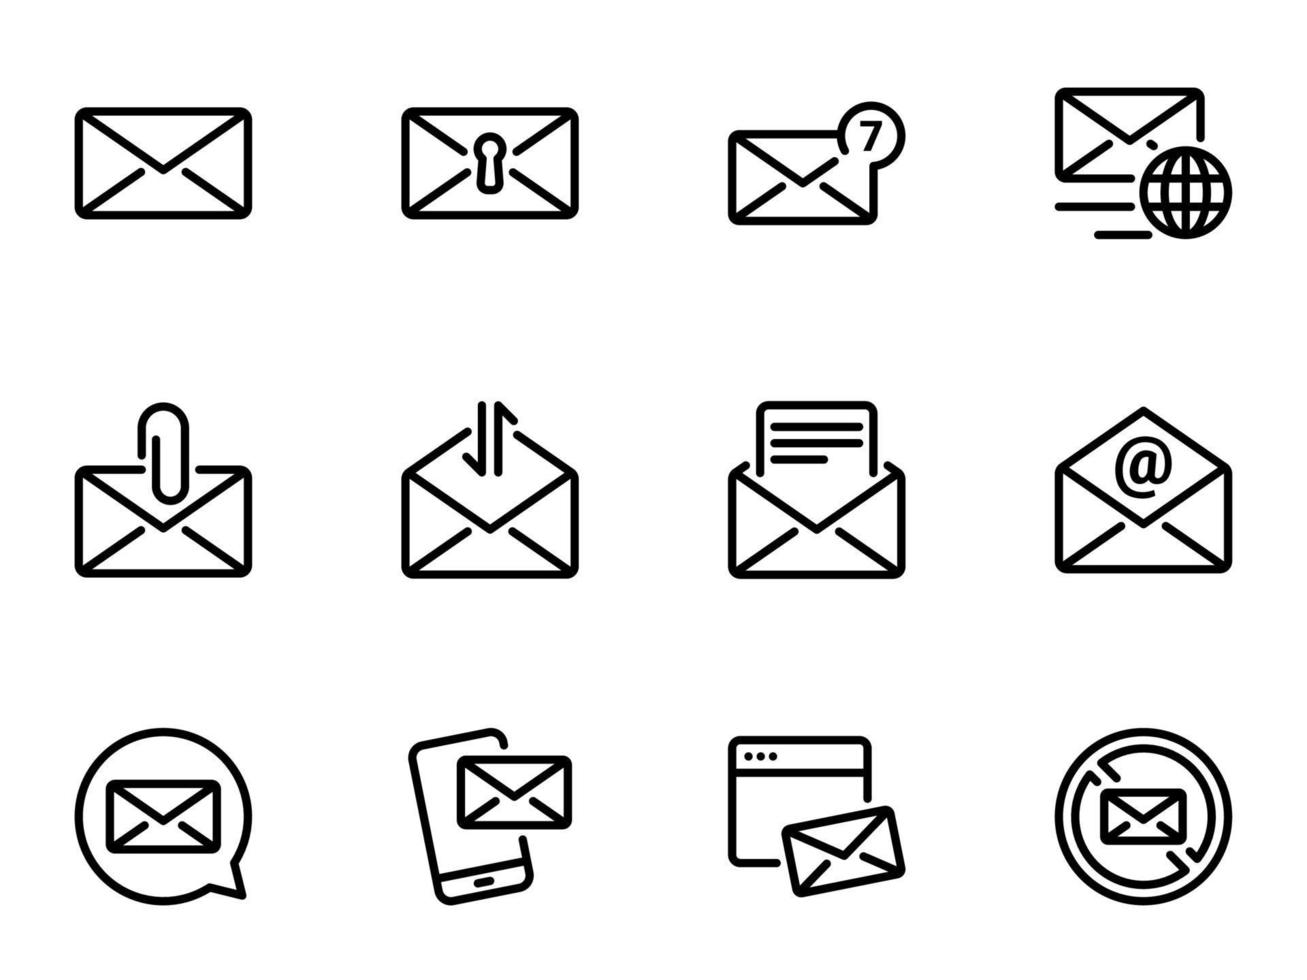 conjunto de ícones do vetor preto, isolados contra um fundo branco. ilustração em um e-mail de tema